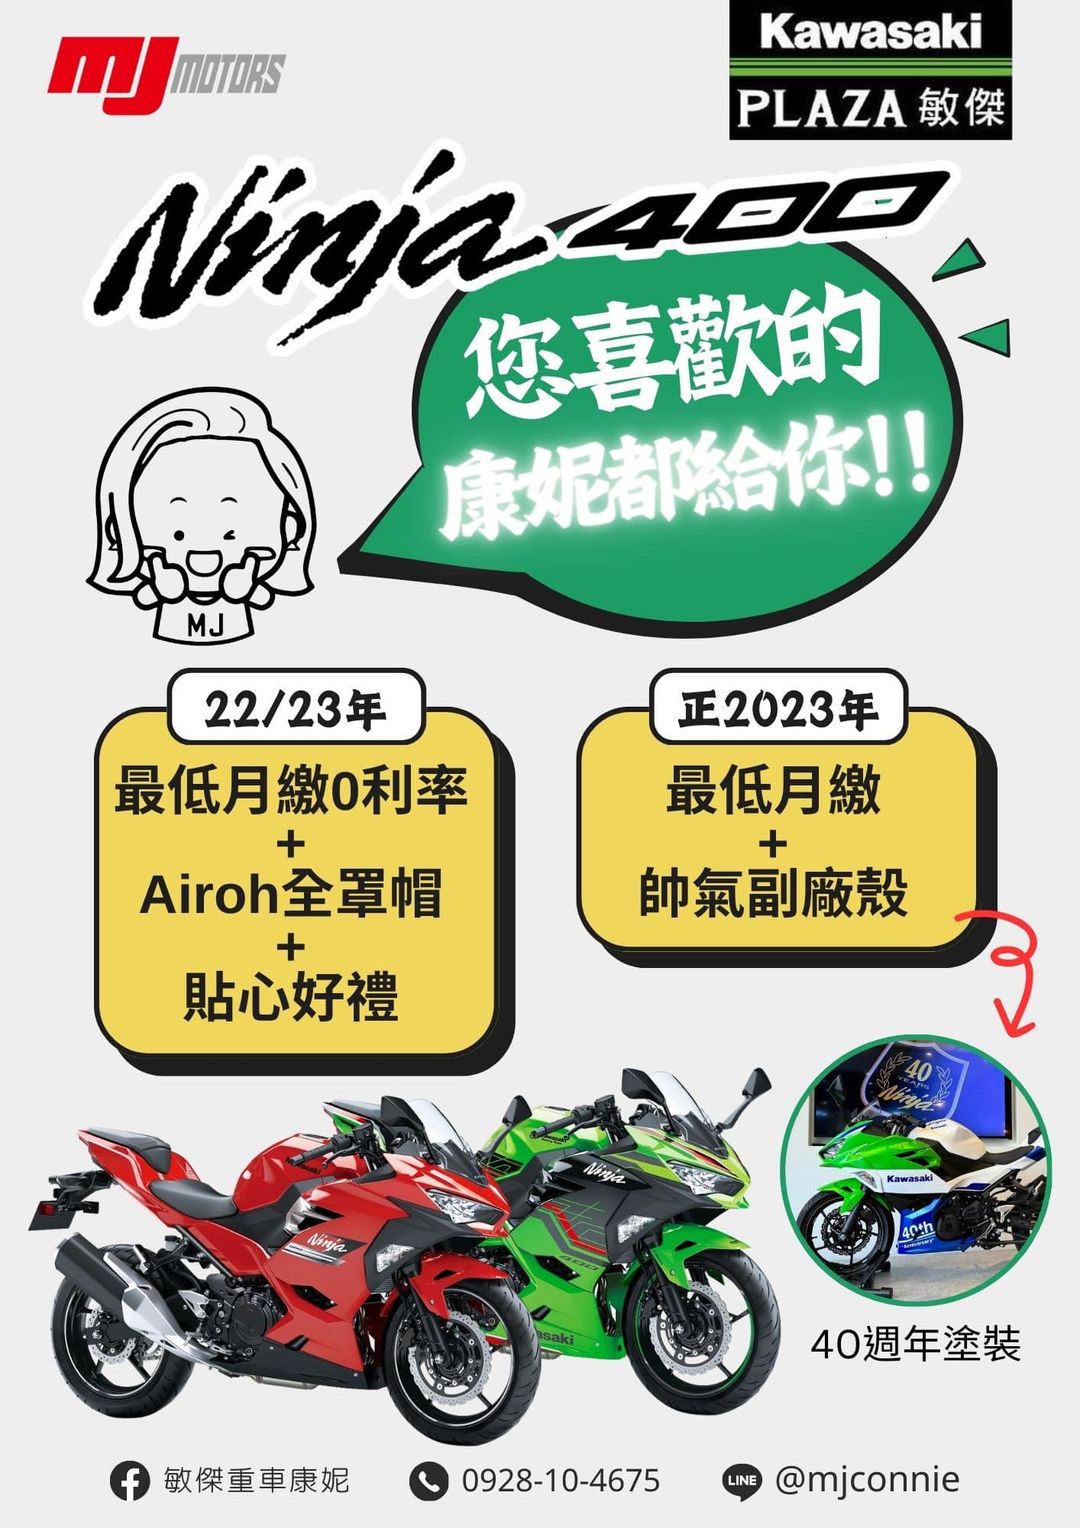 【敏傑車業資深銷售專員 康妮 Connie】KAWASAKI NINJA400 - 「Webike-摩托車市」 『敏傑康妮』Kawasaki Ninja 400 超低月繳 多重好禮 你想要的 康妮都給你！！